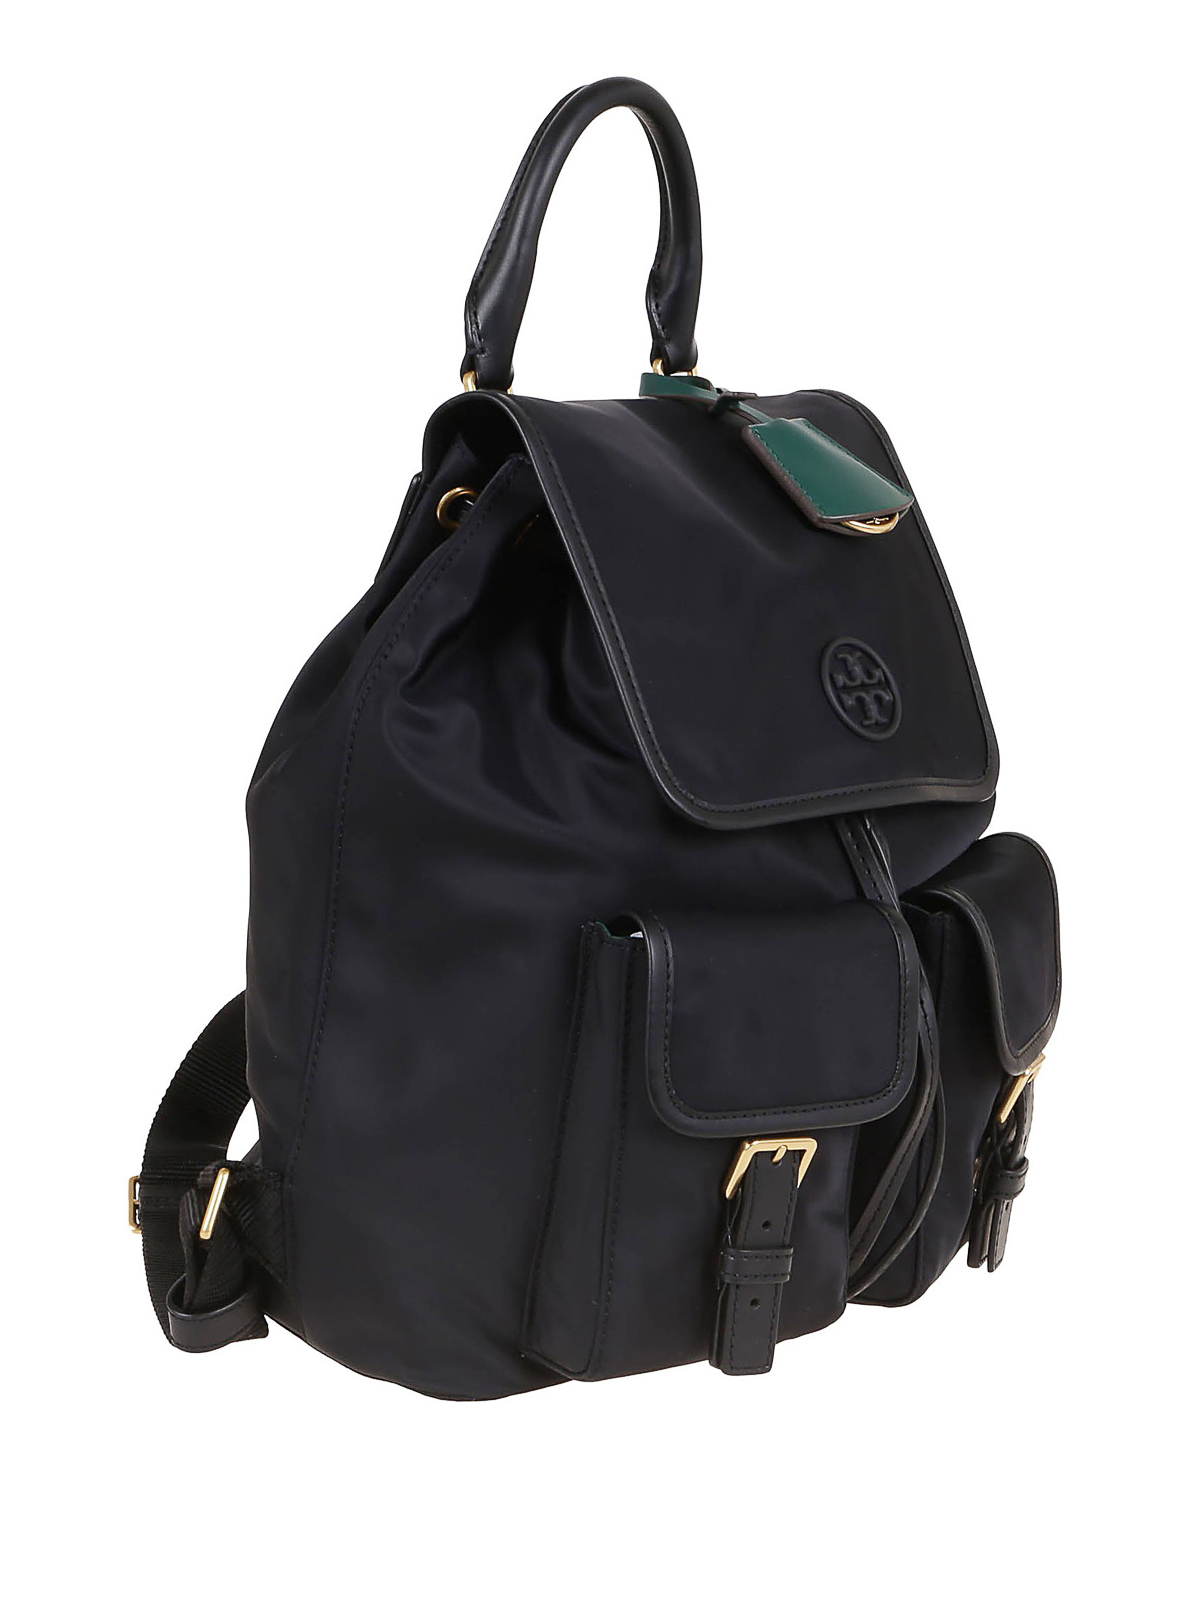 Backpacks Tory Burch - Perry backpack - 74462001